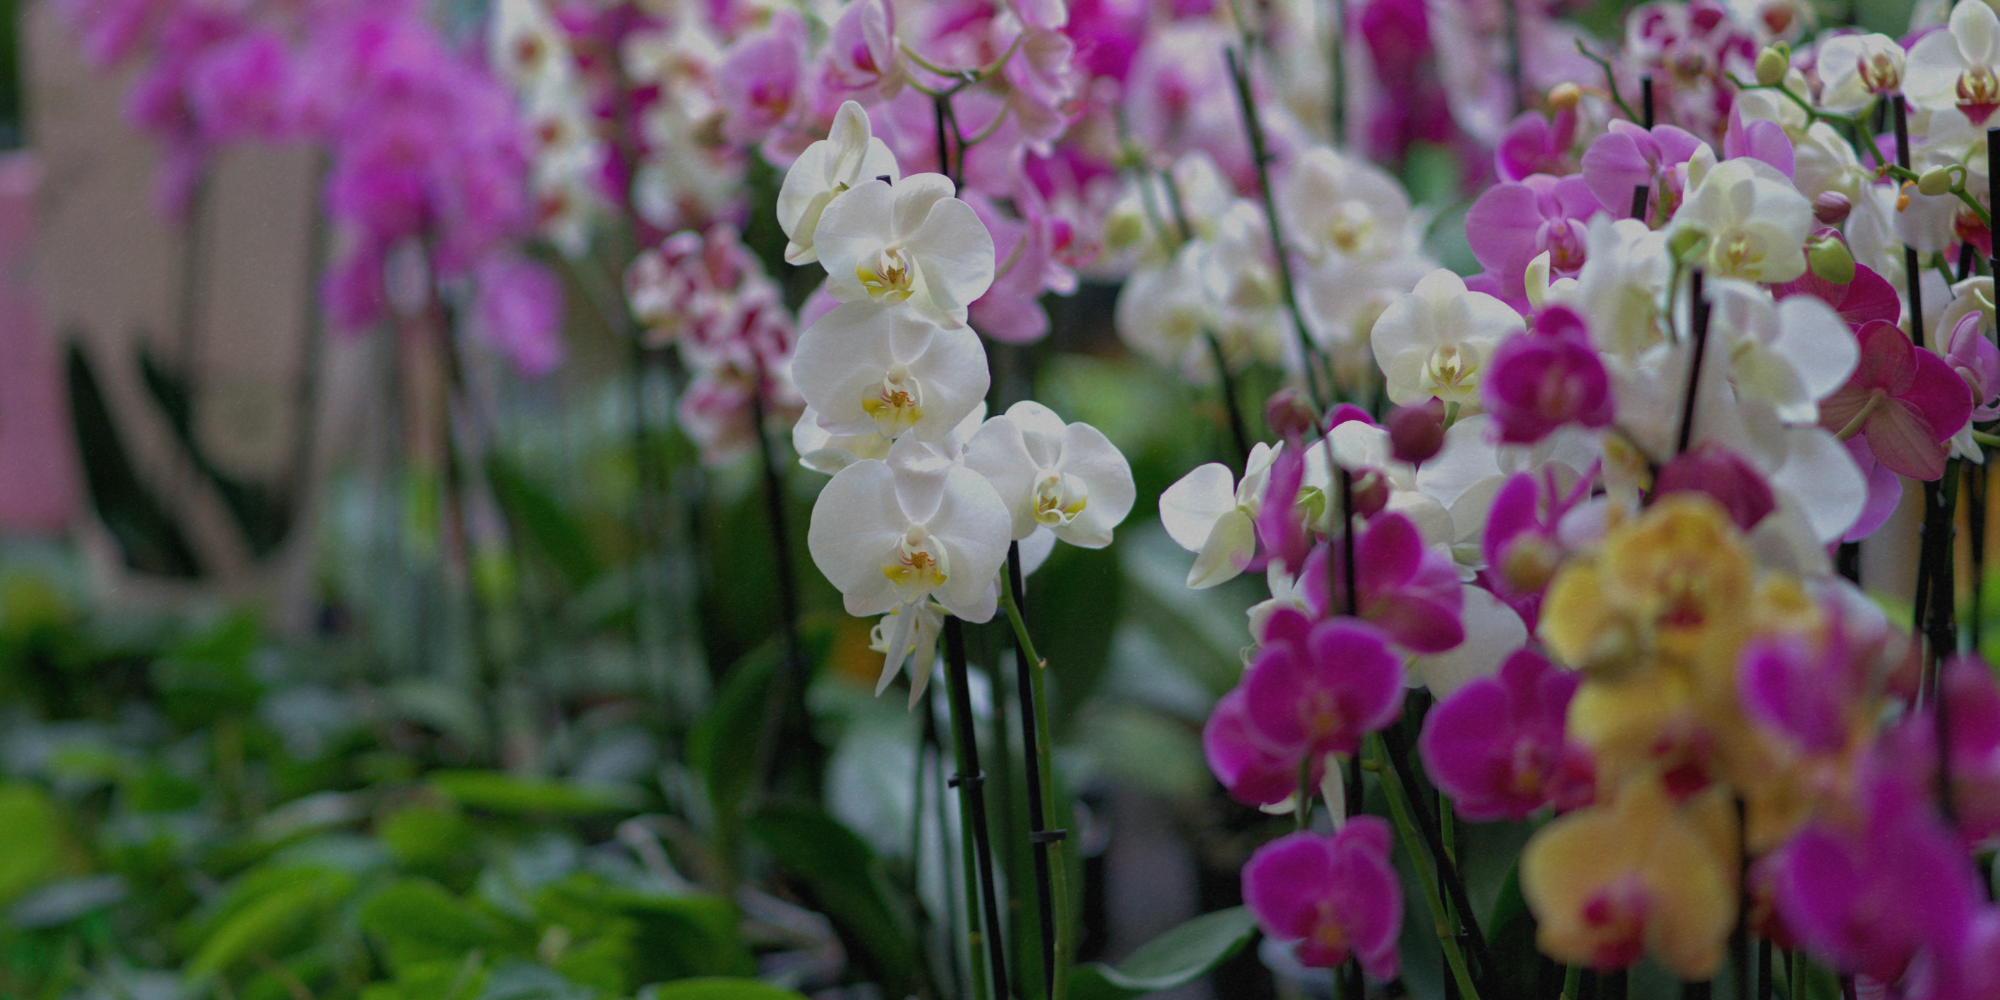 Come riconoscere un Orchidea sana al momento dell'acquisto?